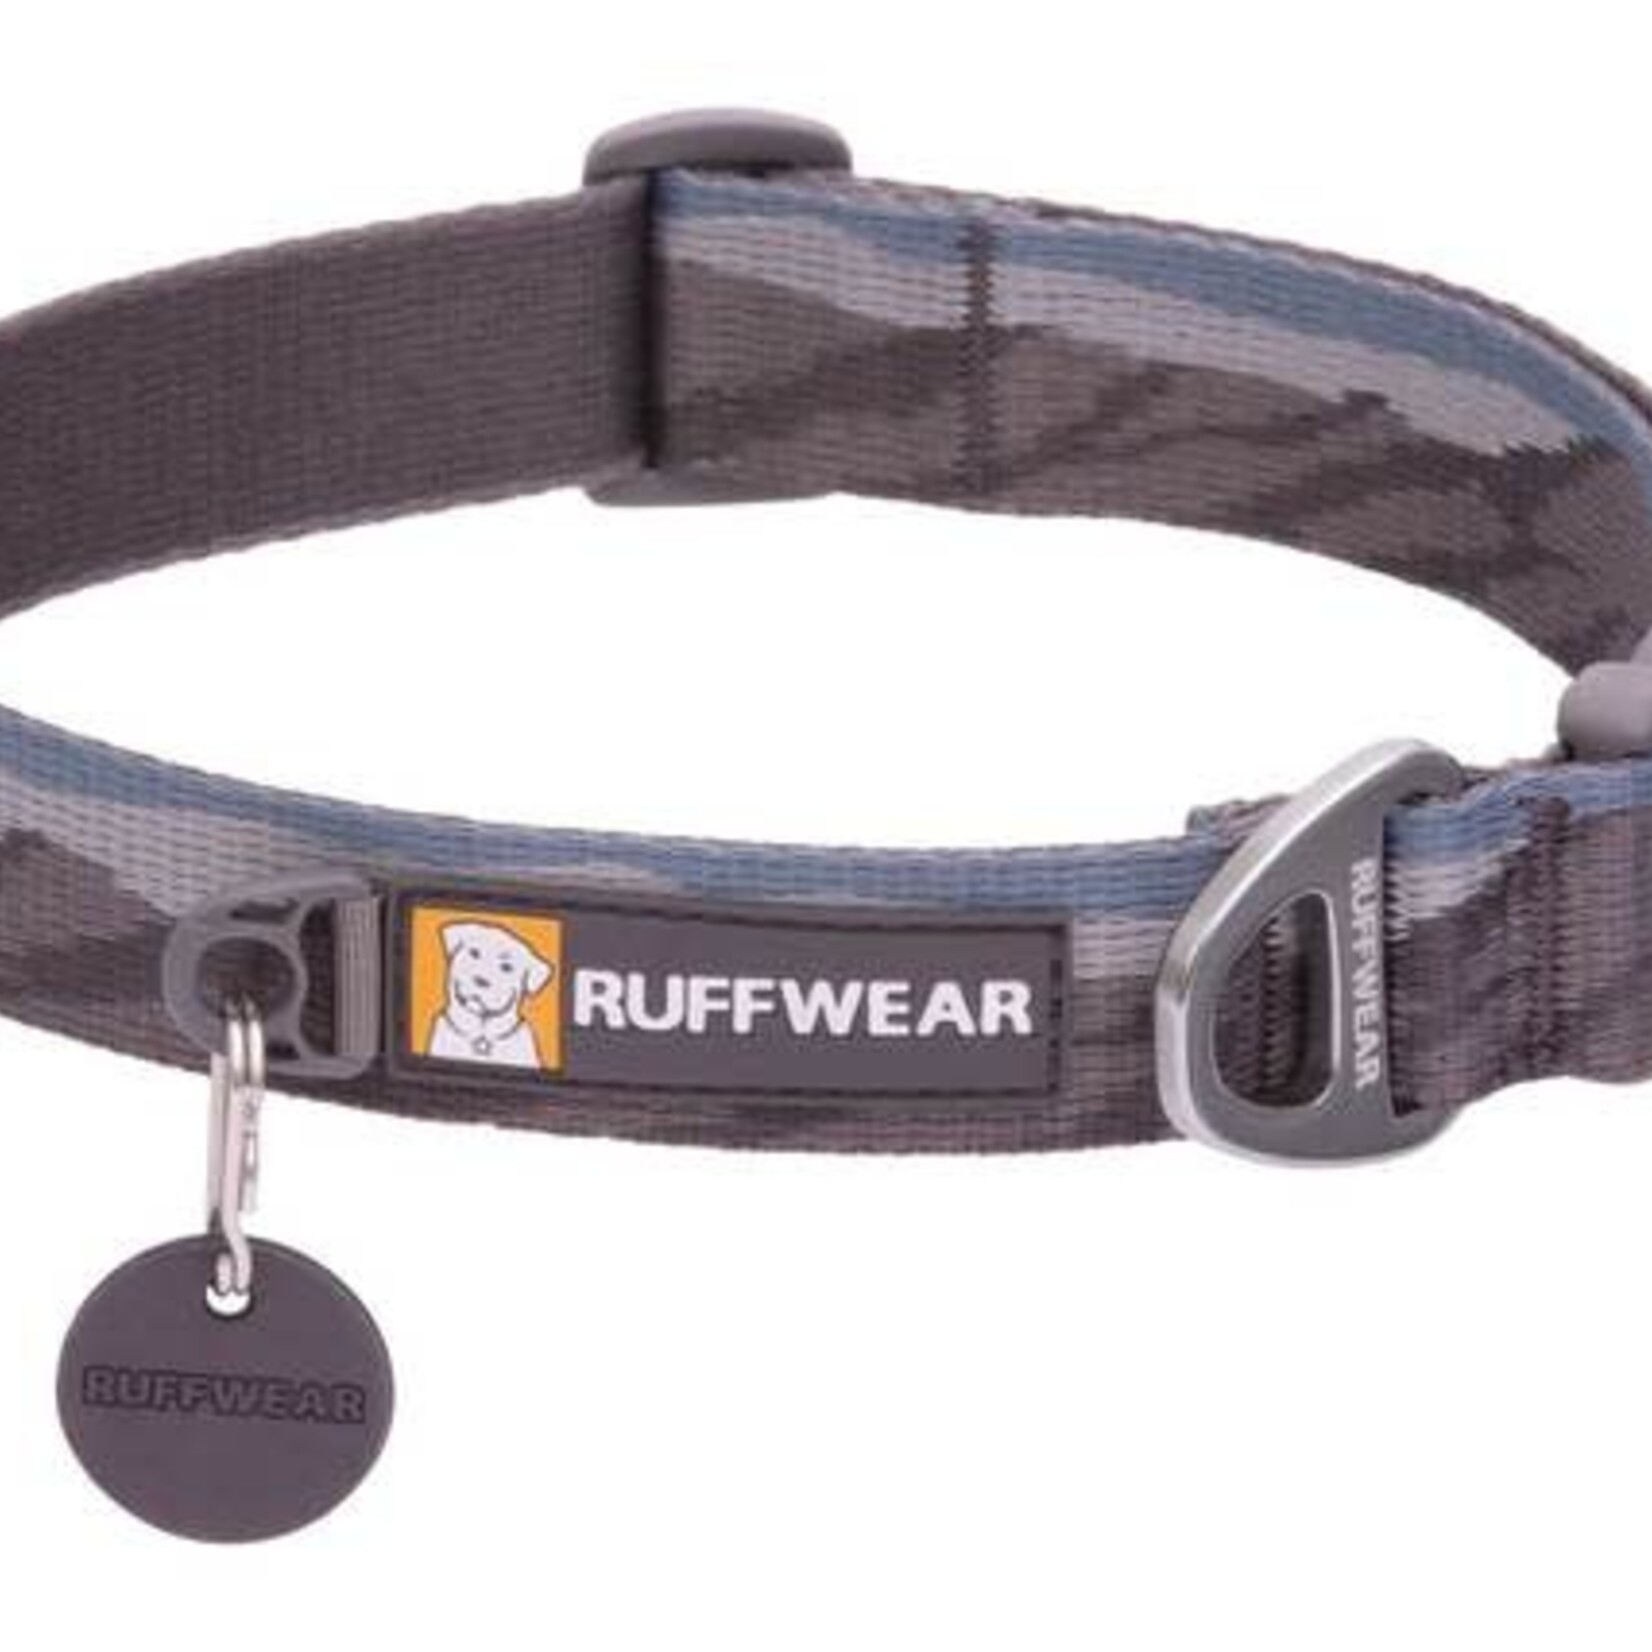 Ruffwear Ruffwear Flat Out collar 2021